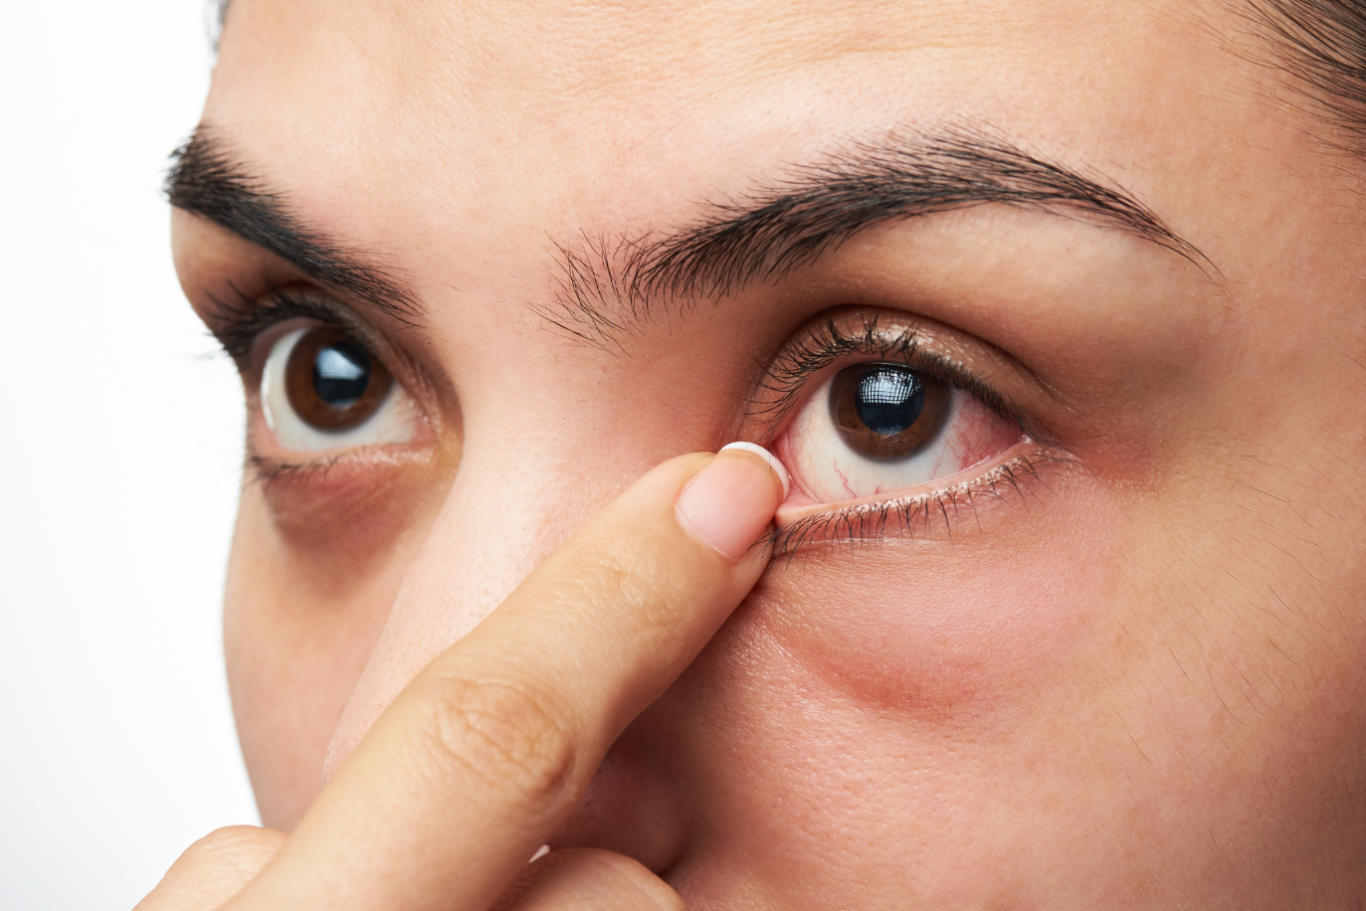 6 عفونت چشم شایع در دوران بارداری. علائم و درمان + 8 نکته برای پیشگیری از عفونت